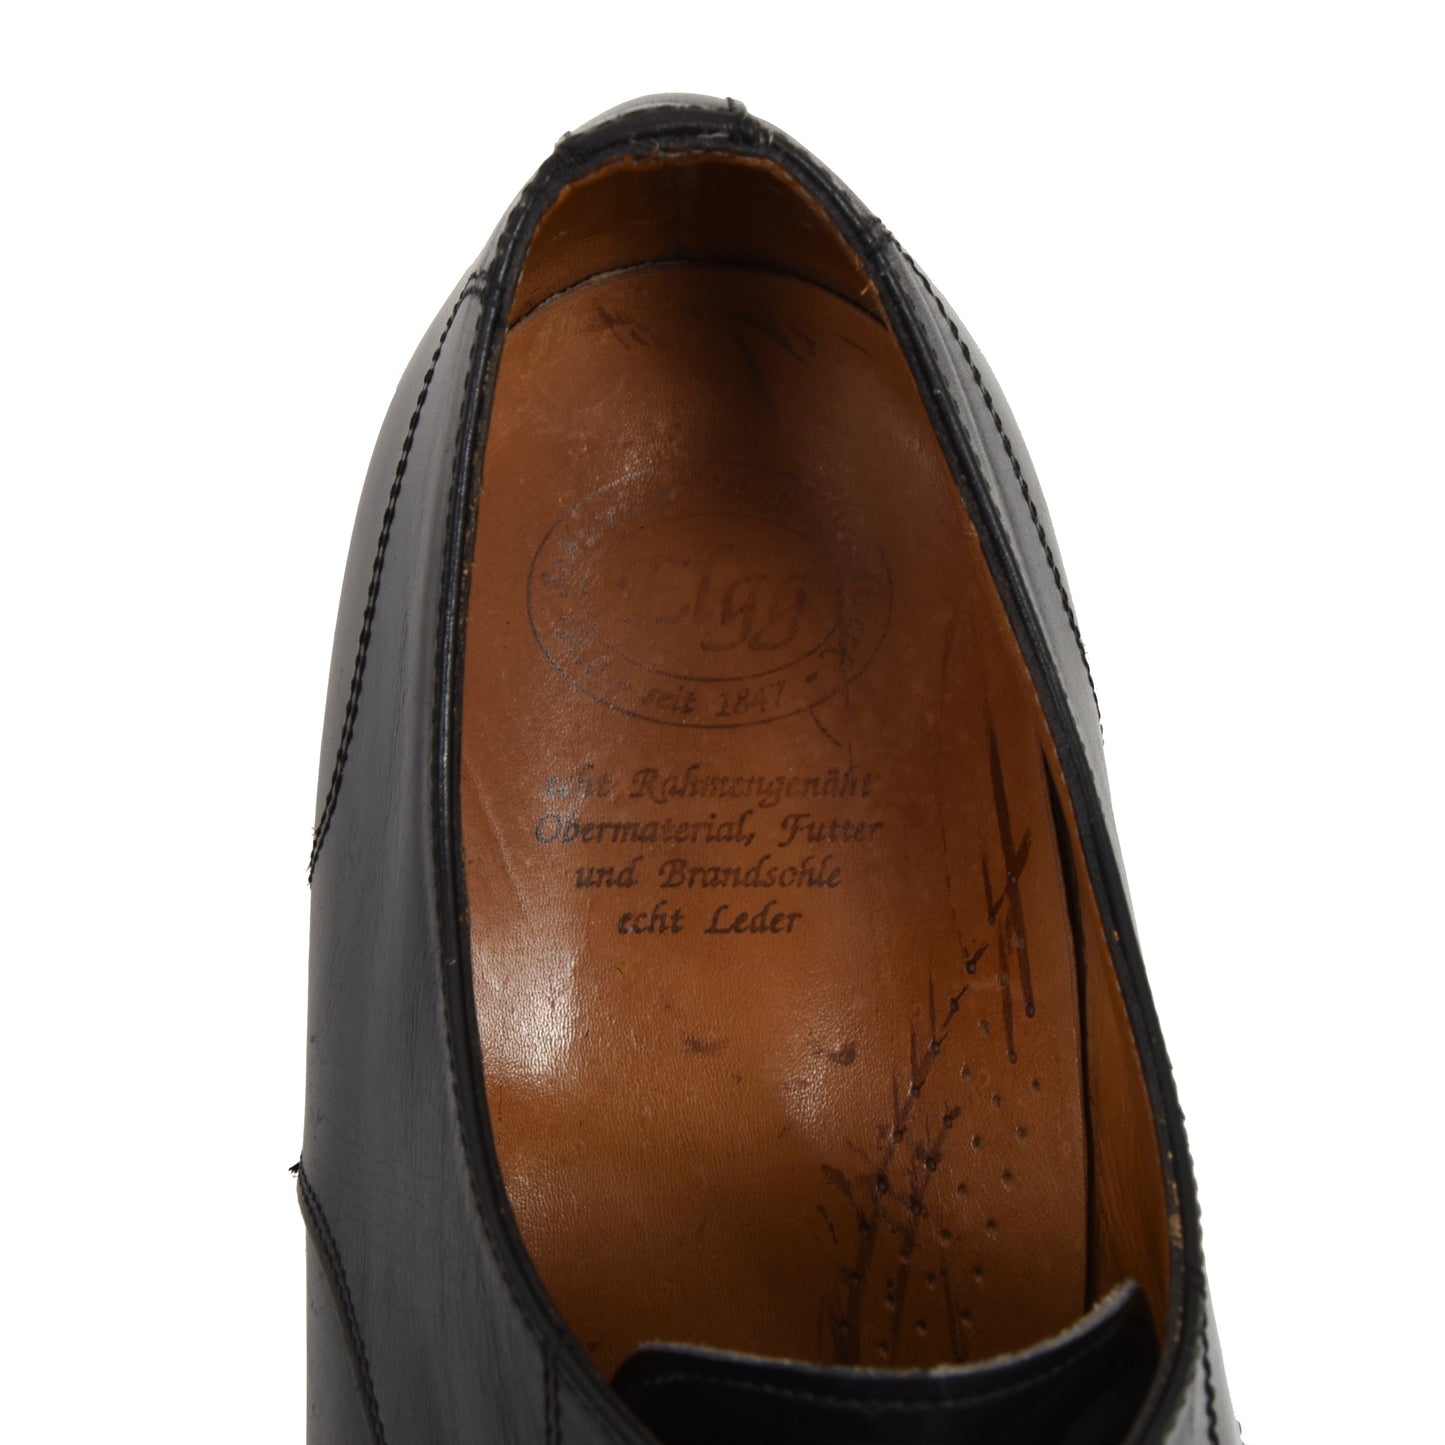 Elgg Switzerland Shoes Size 10.5 G - Black